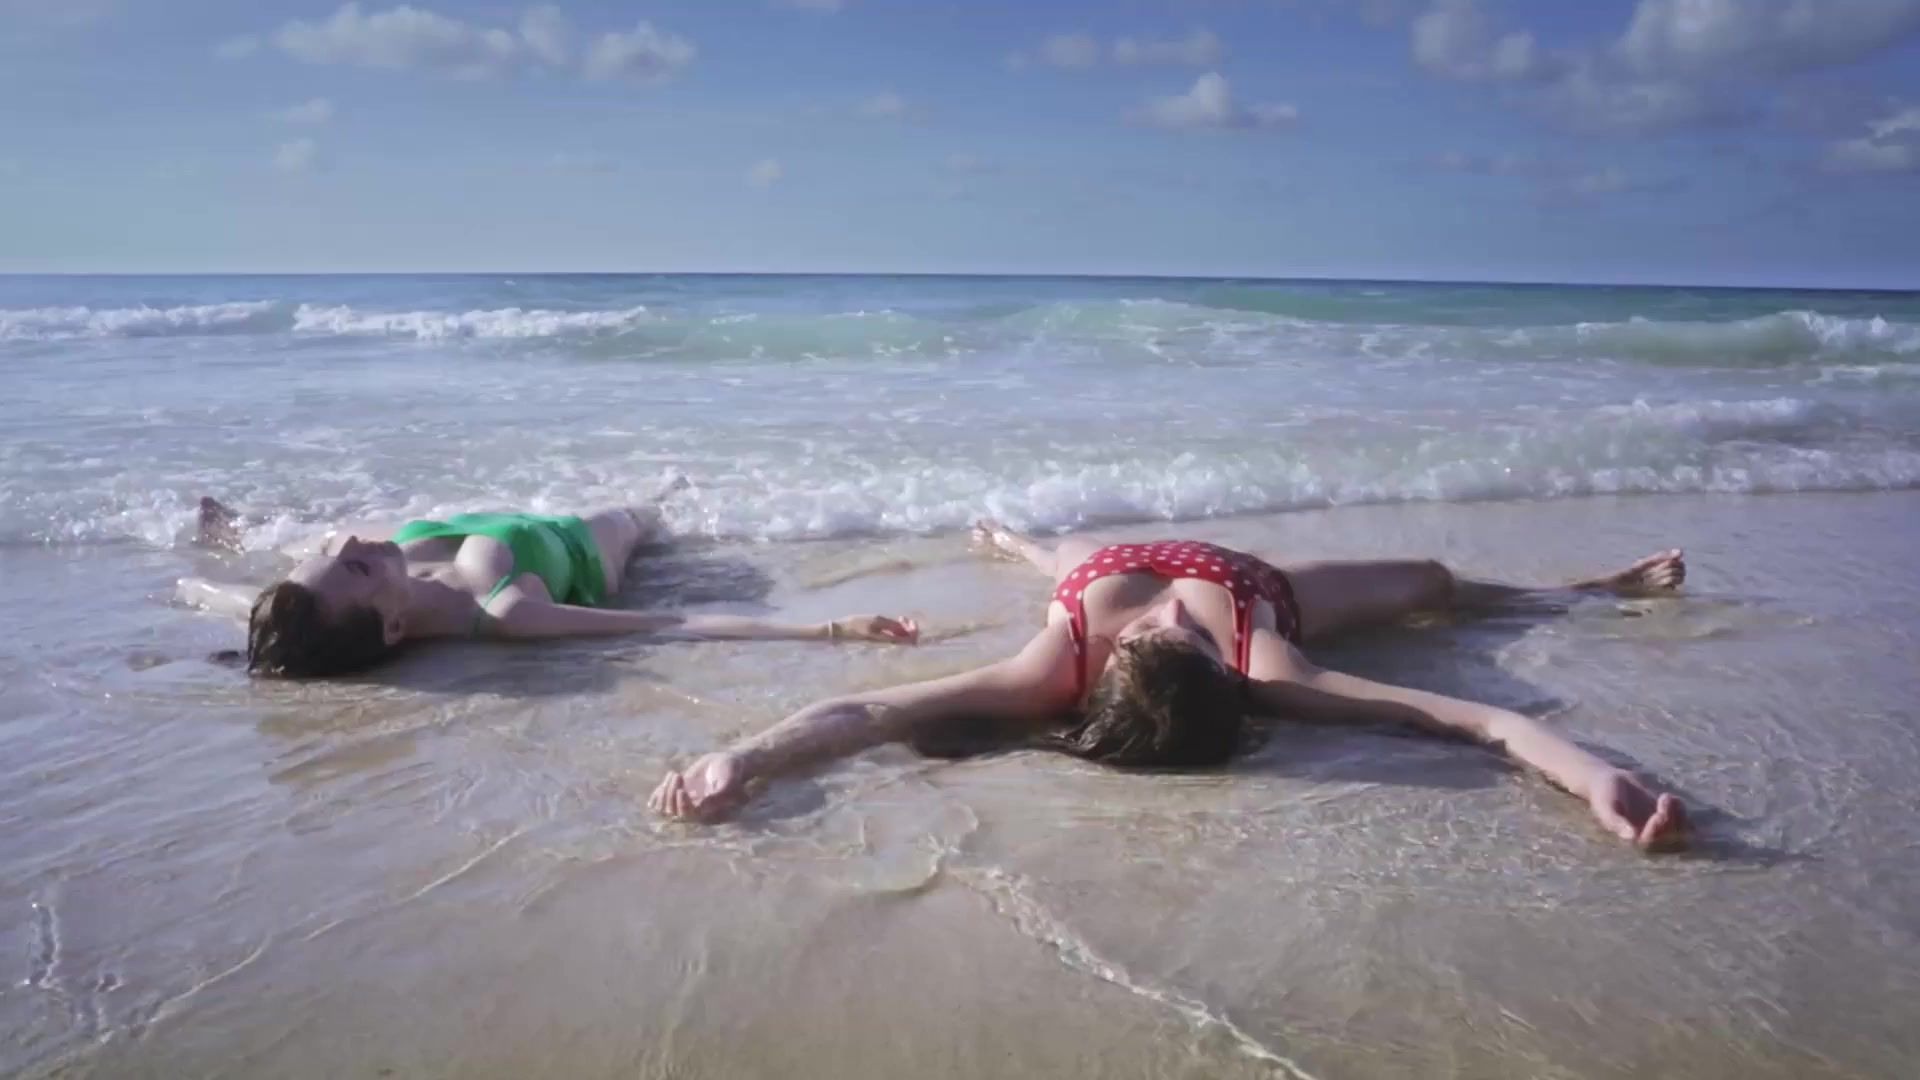 Bdsm Alexa-Jeanne Dube nude - Cuba merci, gracias (2019) Muscular